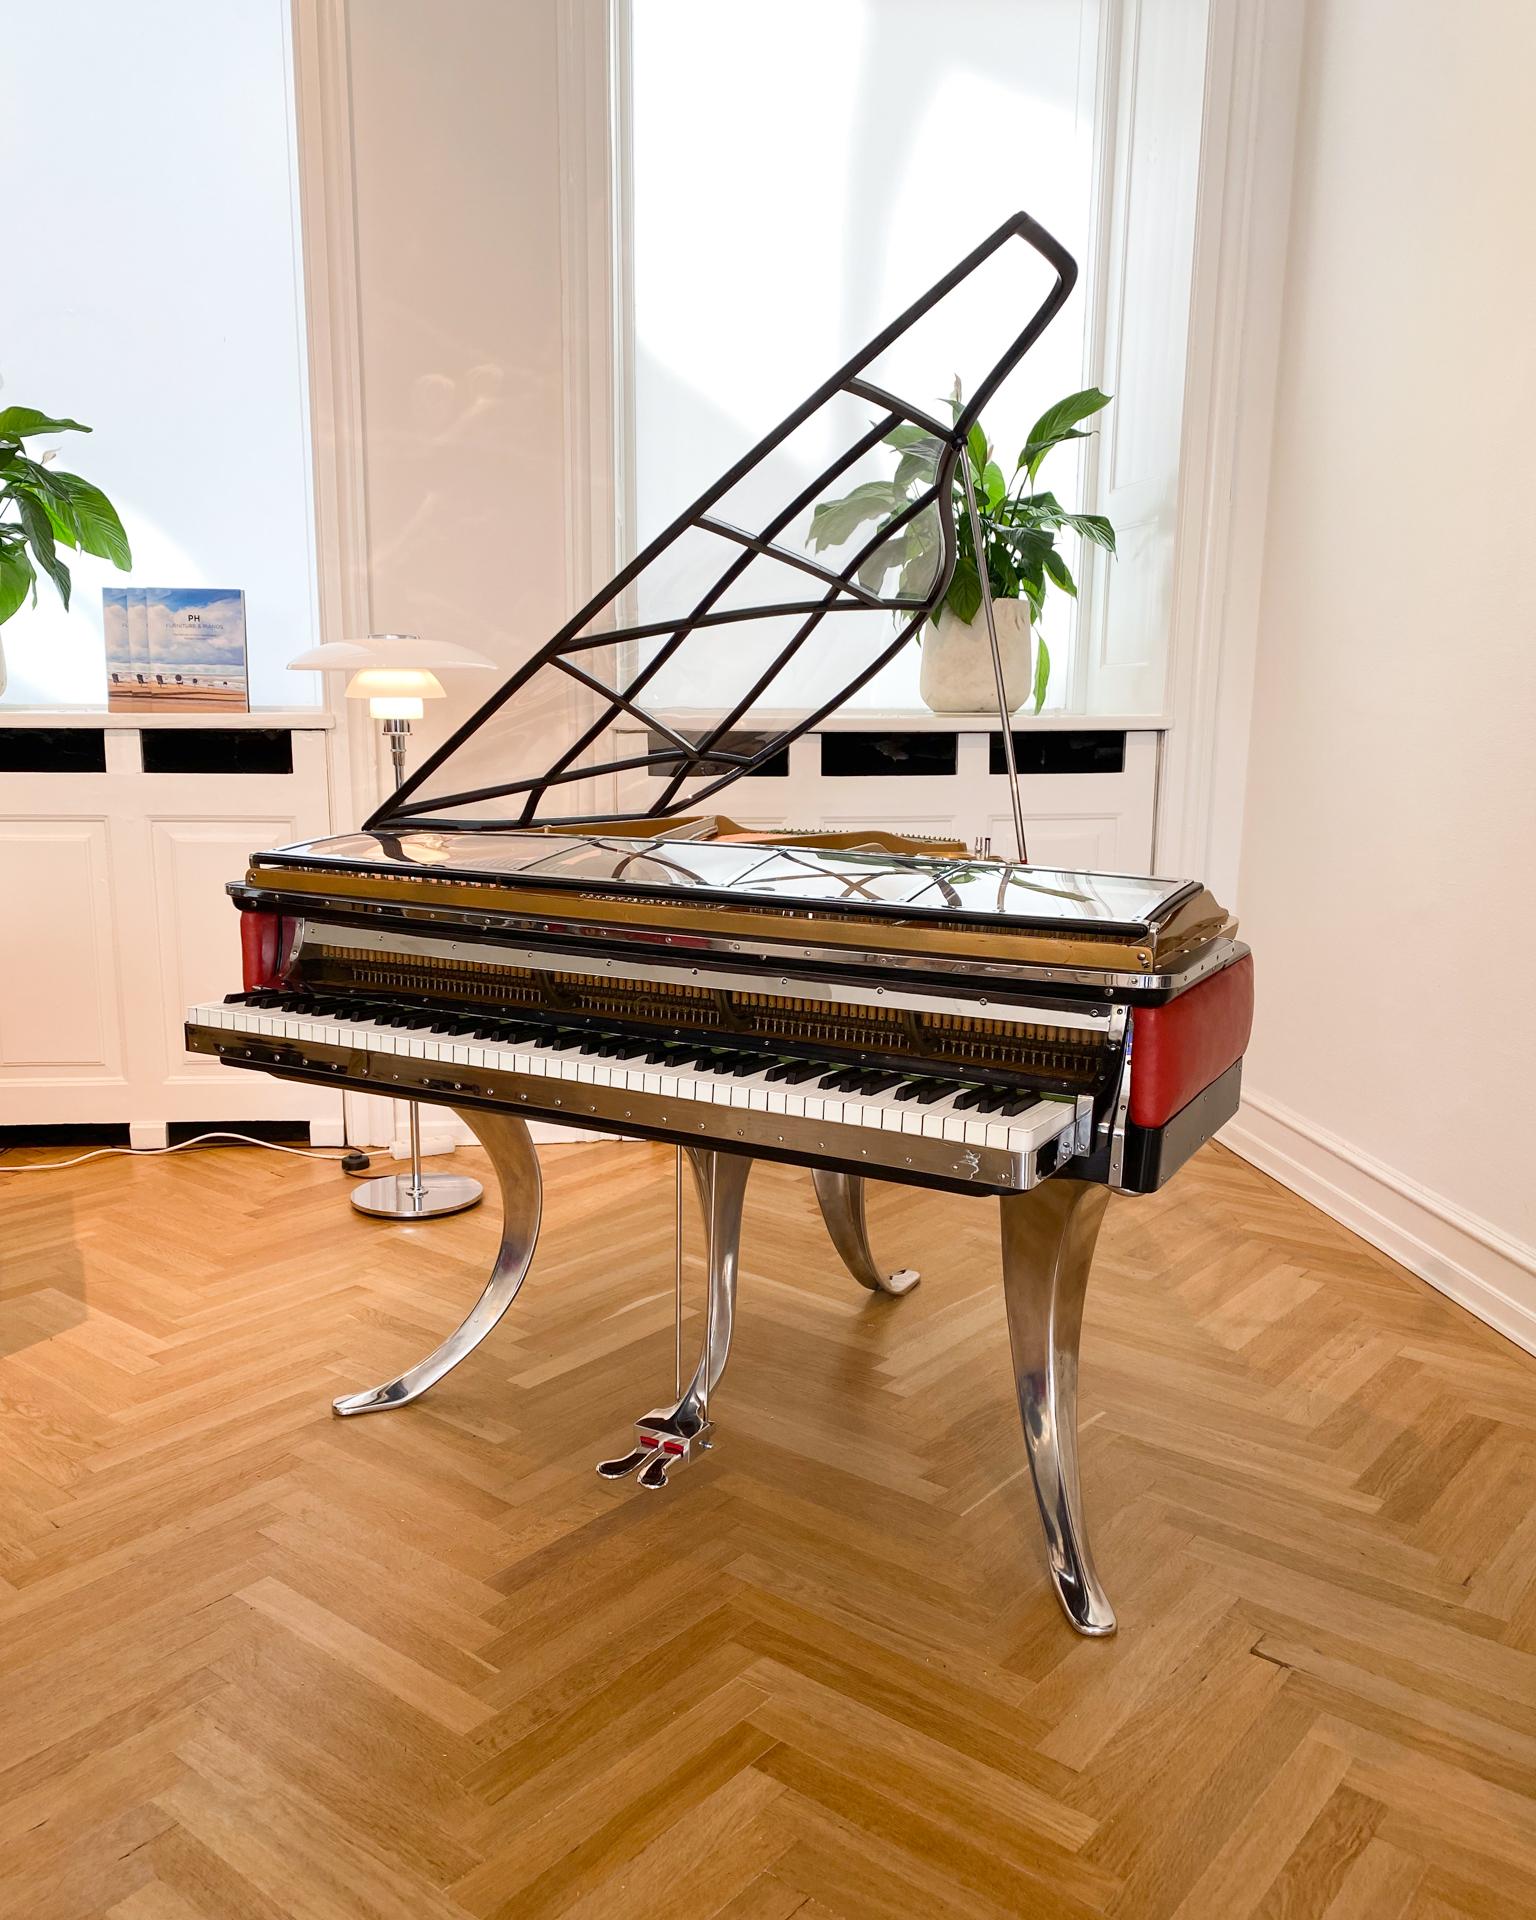 Ce piano à queue PH, numéro de série 4600, a été fabriqué entre 1935 et 1938. Il s'agit d'un instrument vintage en excellent état qui a été soigneusement restauré. Cette pièce unique a une provenance exclusive, ayant appartenu au même propriétaire